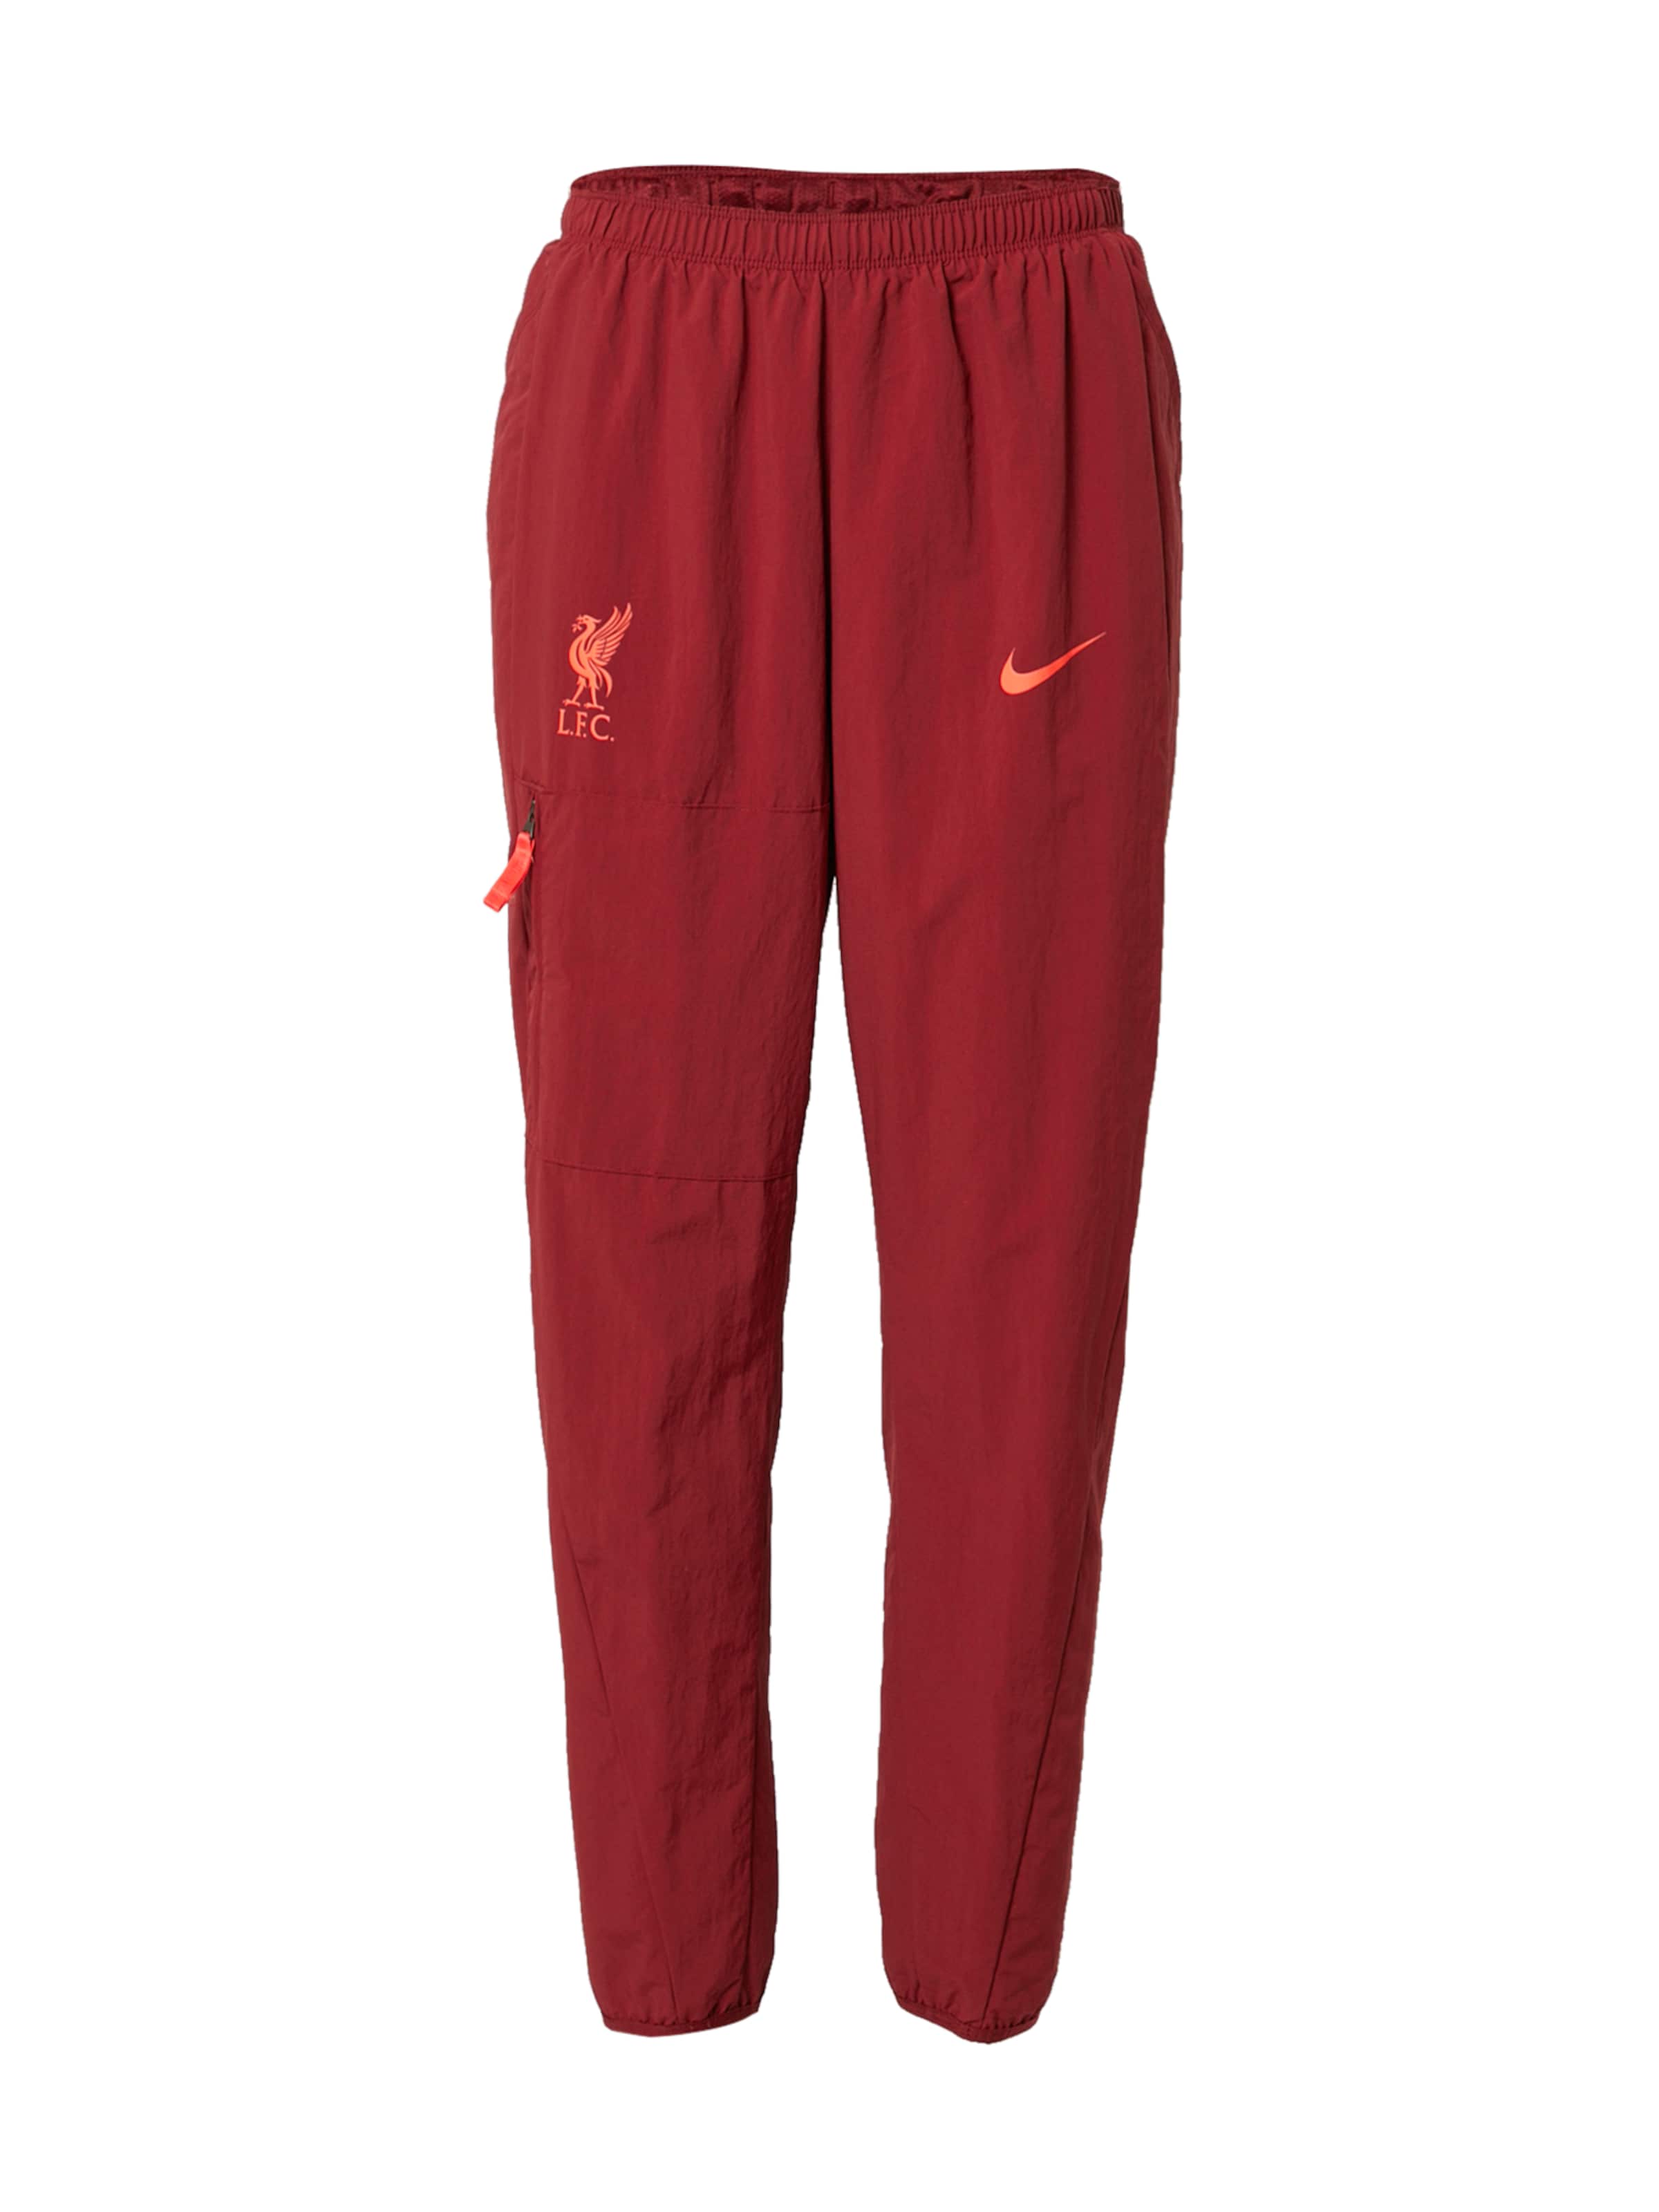 Donna Tipi di sport NIKE Pantaloni sportivi Liverpool FC in Rosso Scuro, Rosso 